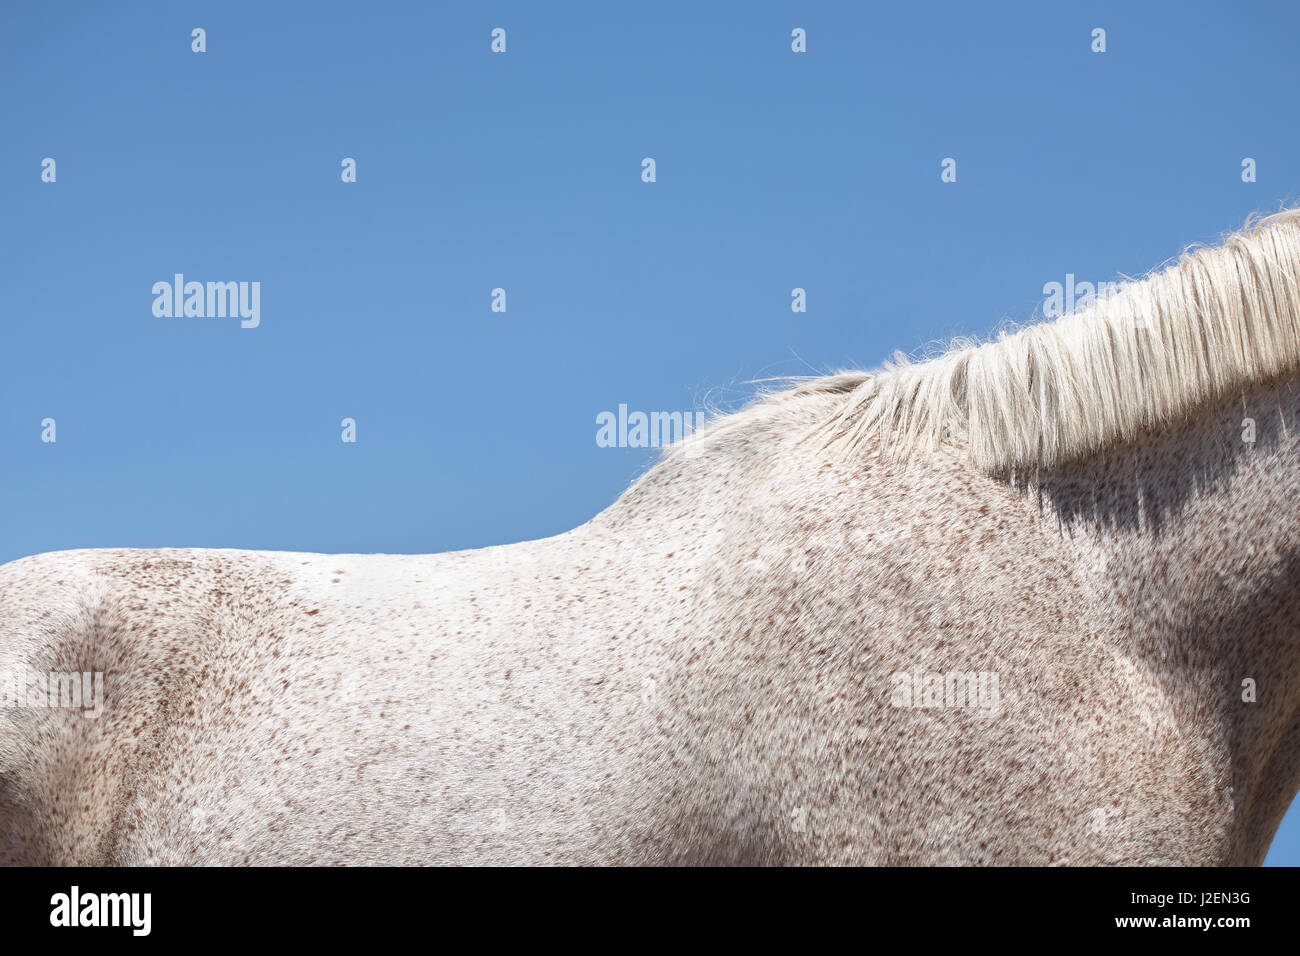 White Horse on Blue Background Stock Photo